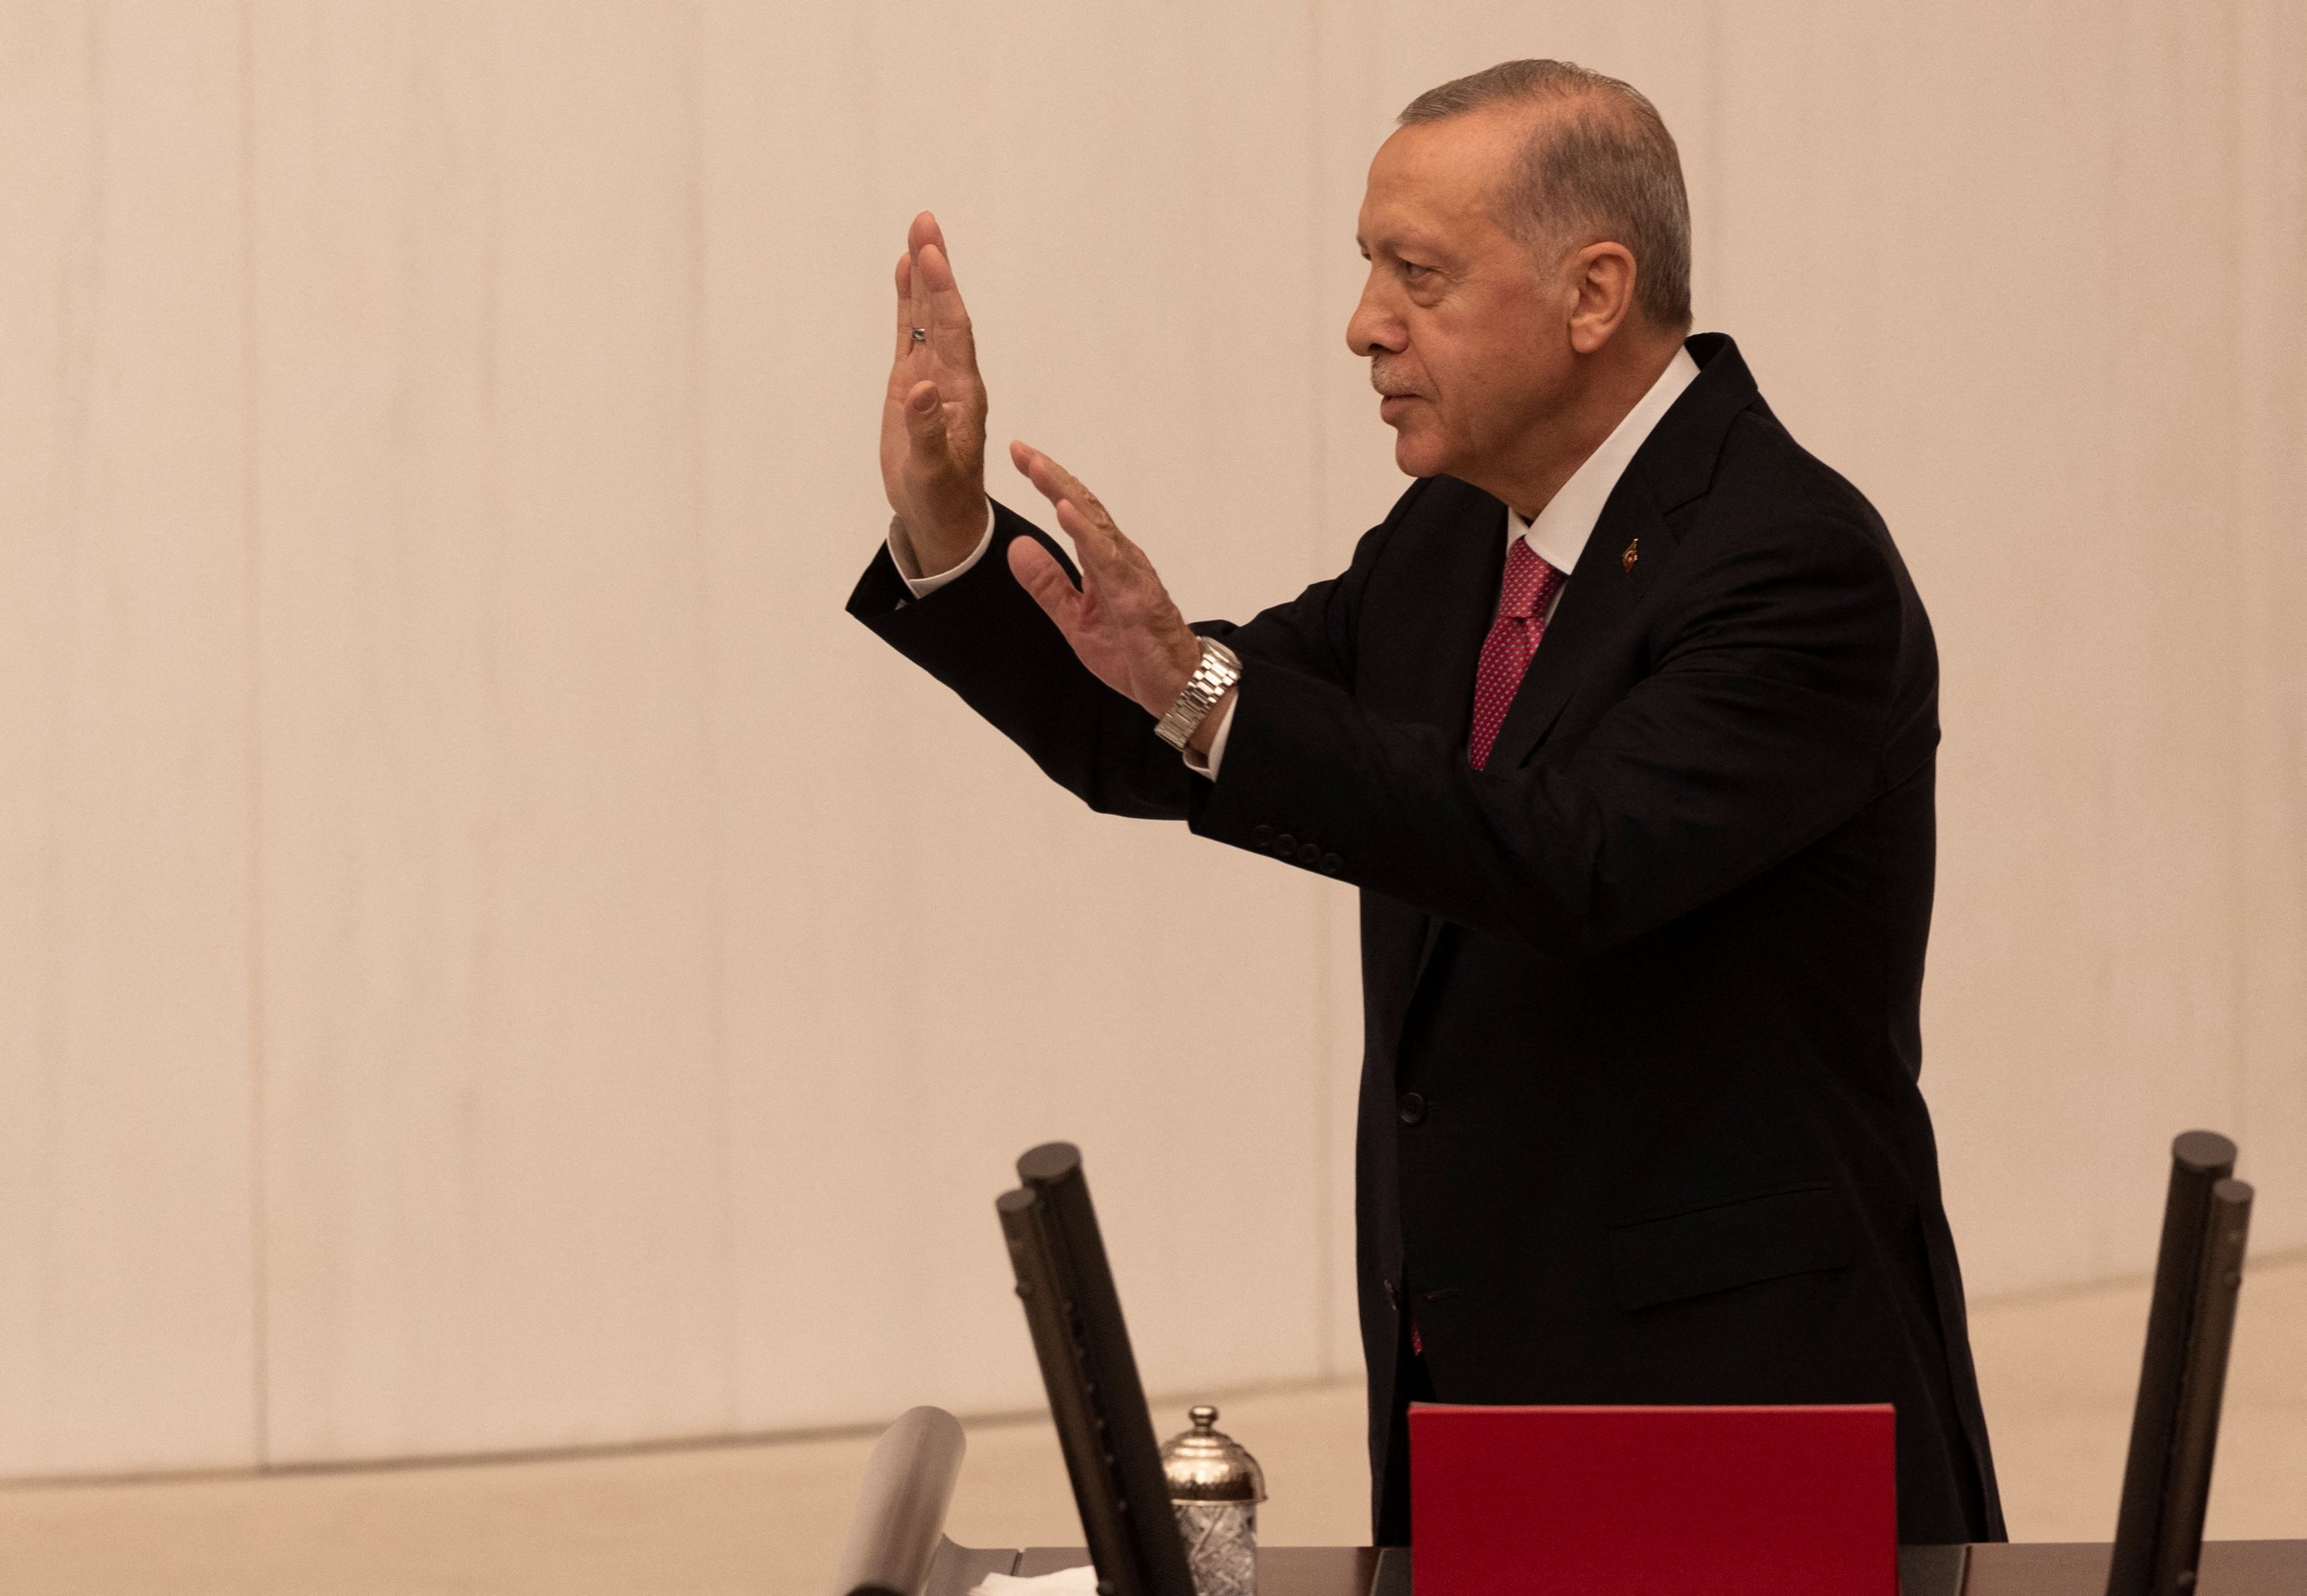 Κυβερνοπειρατεία στην Τουρκία: Προσφέρουν προσωπικά δεδομένα των χρηστών online - Ανάμεσά τους και του Ερντογάν